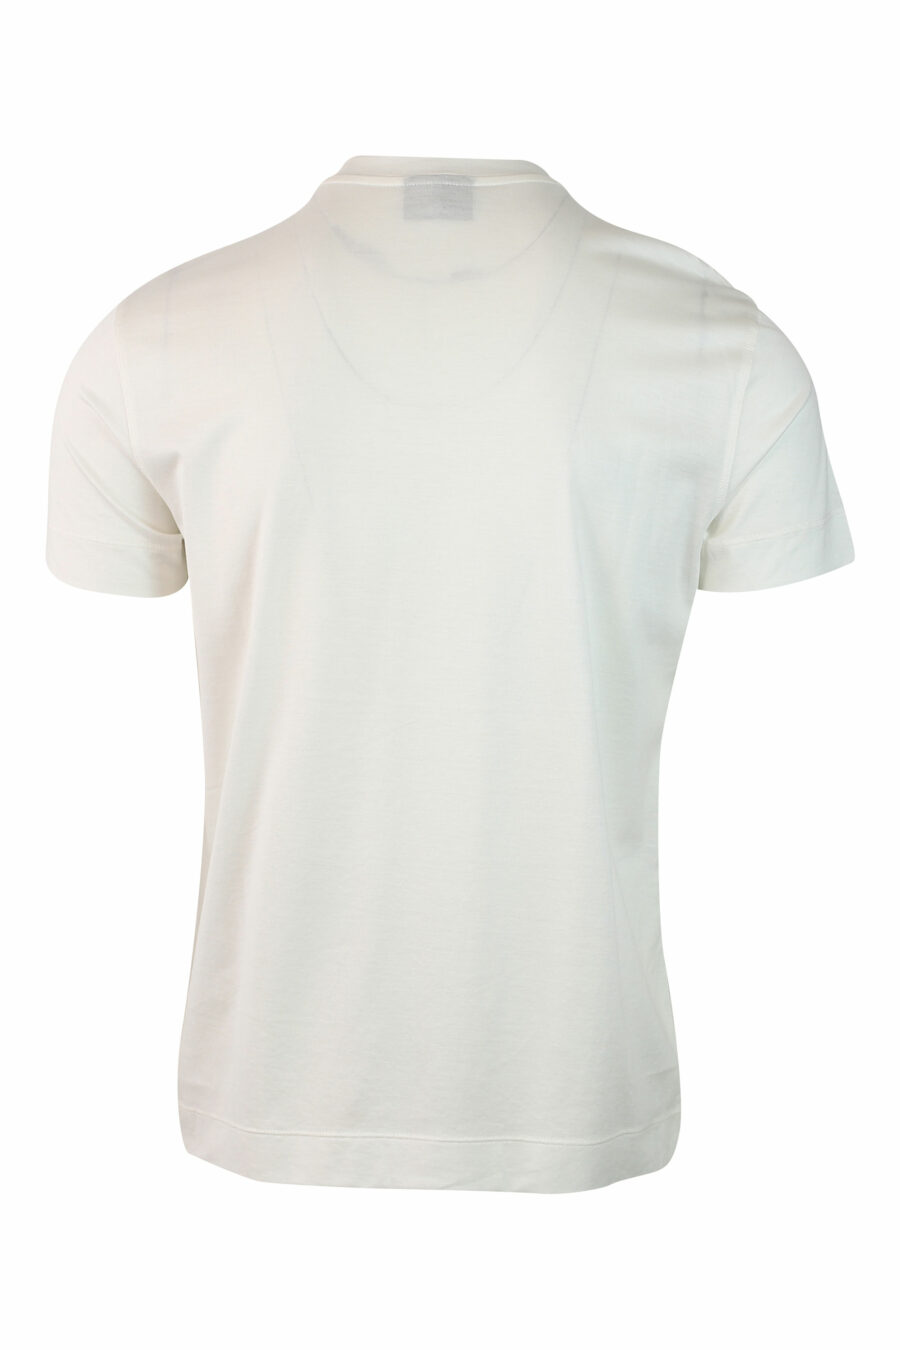 Weißes T-Shirt mit rundem Kragen - IMG 0148